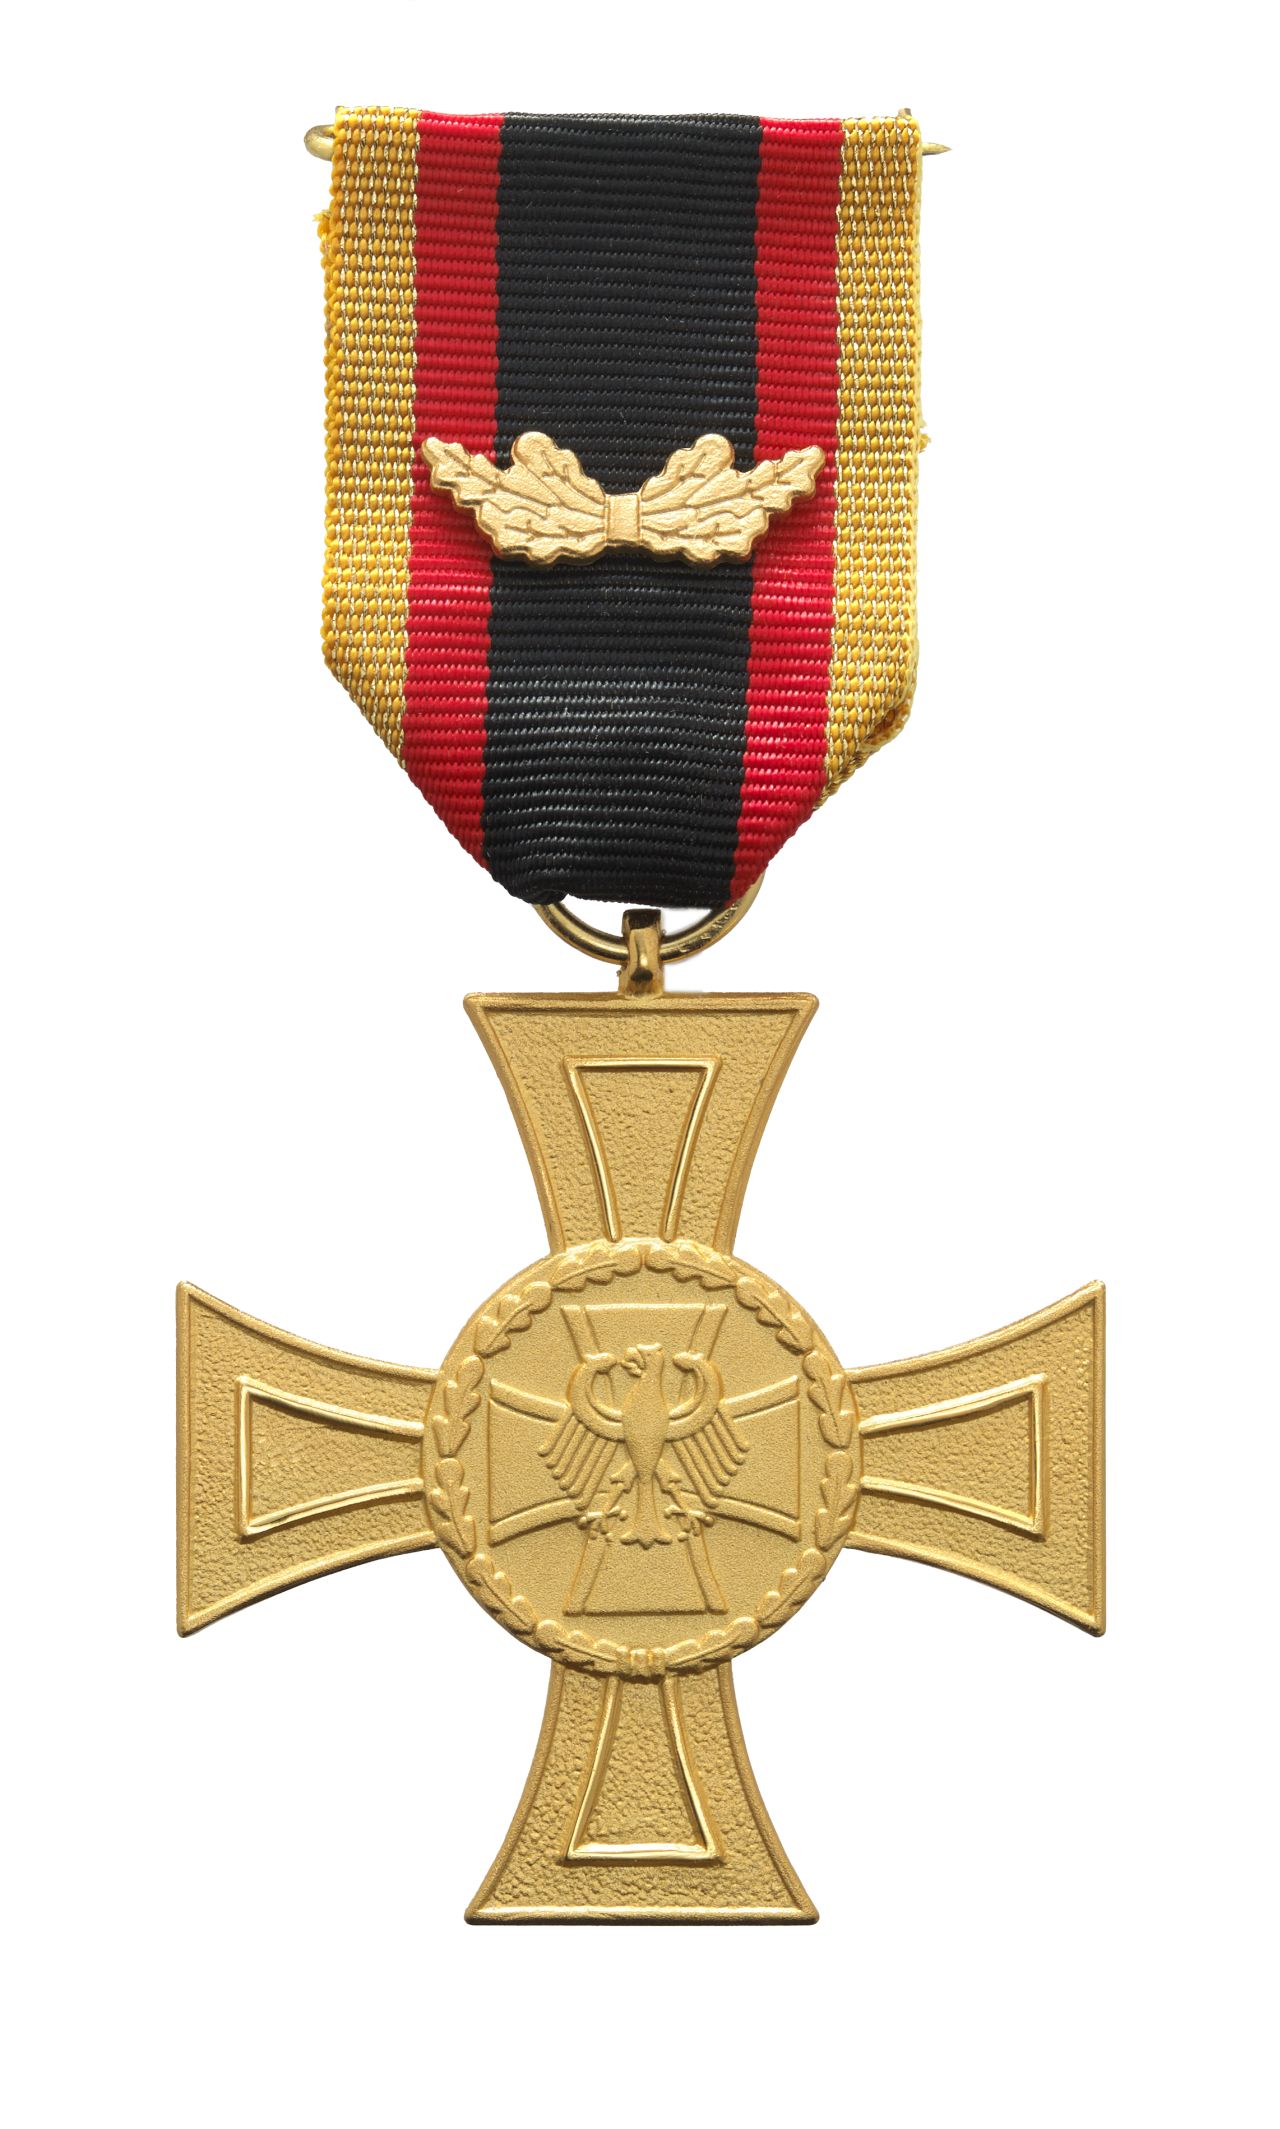 Ehrenkreuz der Bundeswehr für Tapferkeit